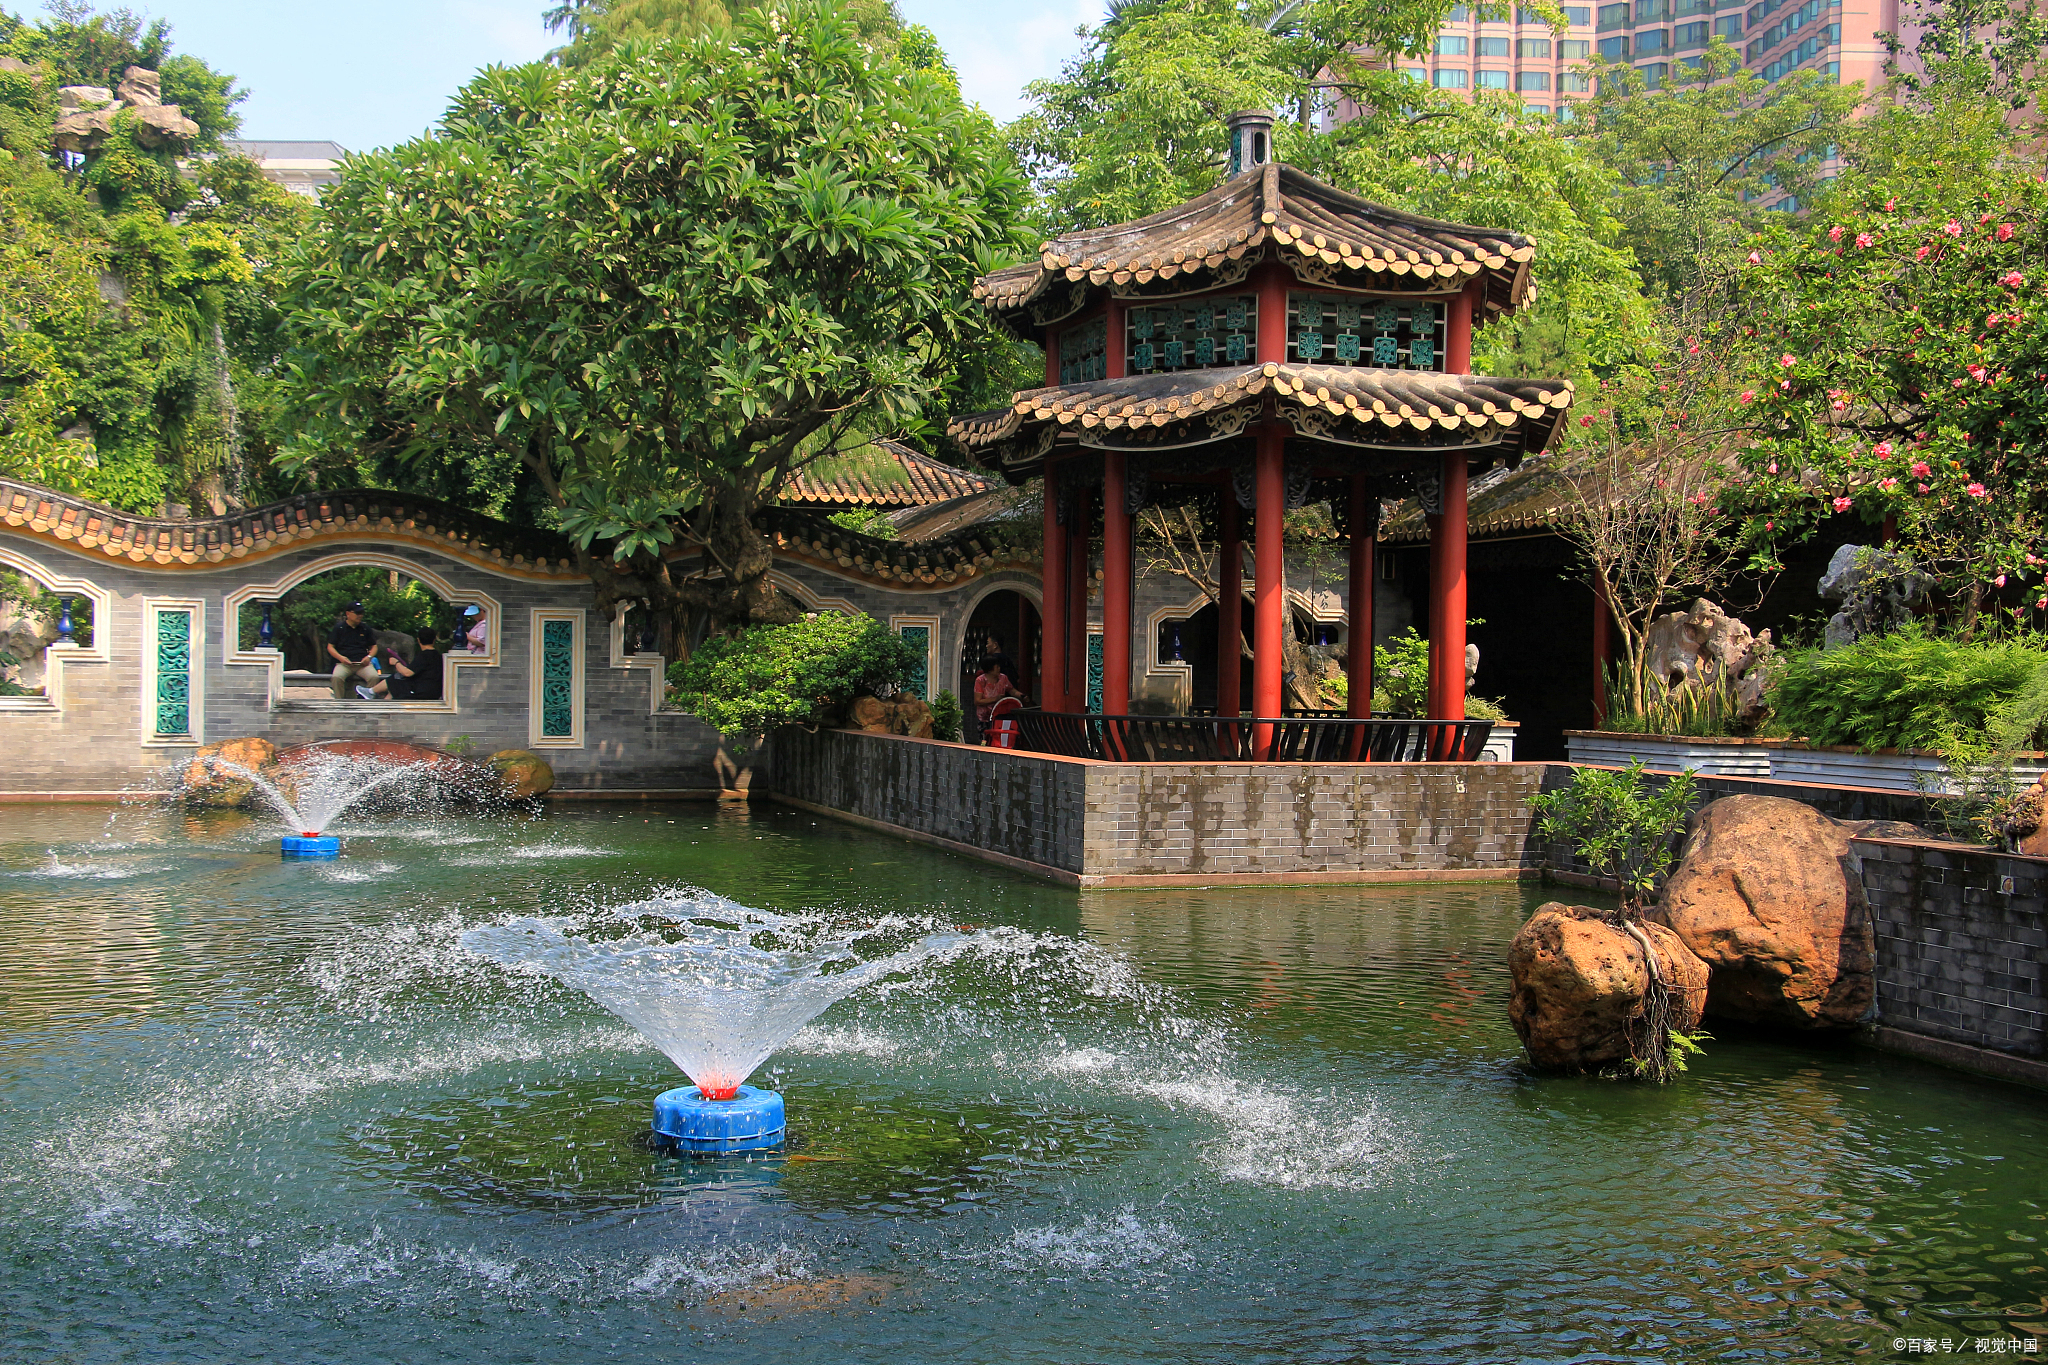 我们来到清晖园,这是一座始建于明代的古园林,也是广东四大名园之首